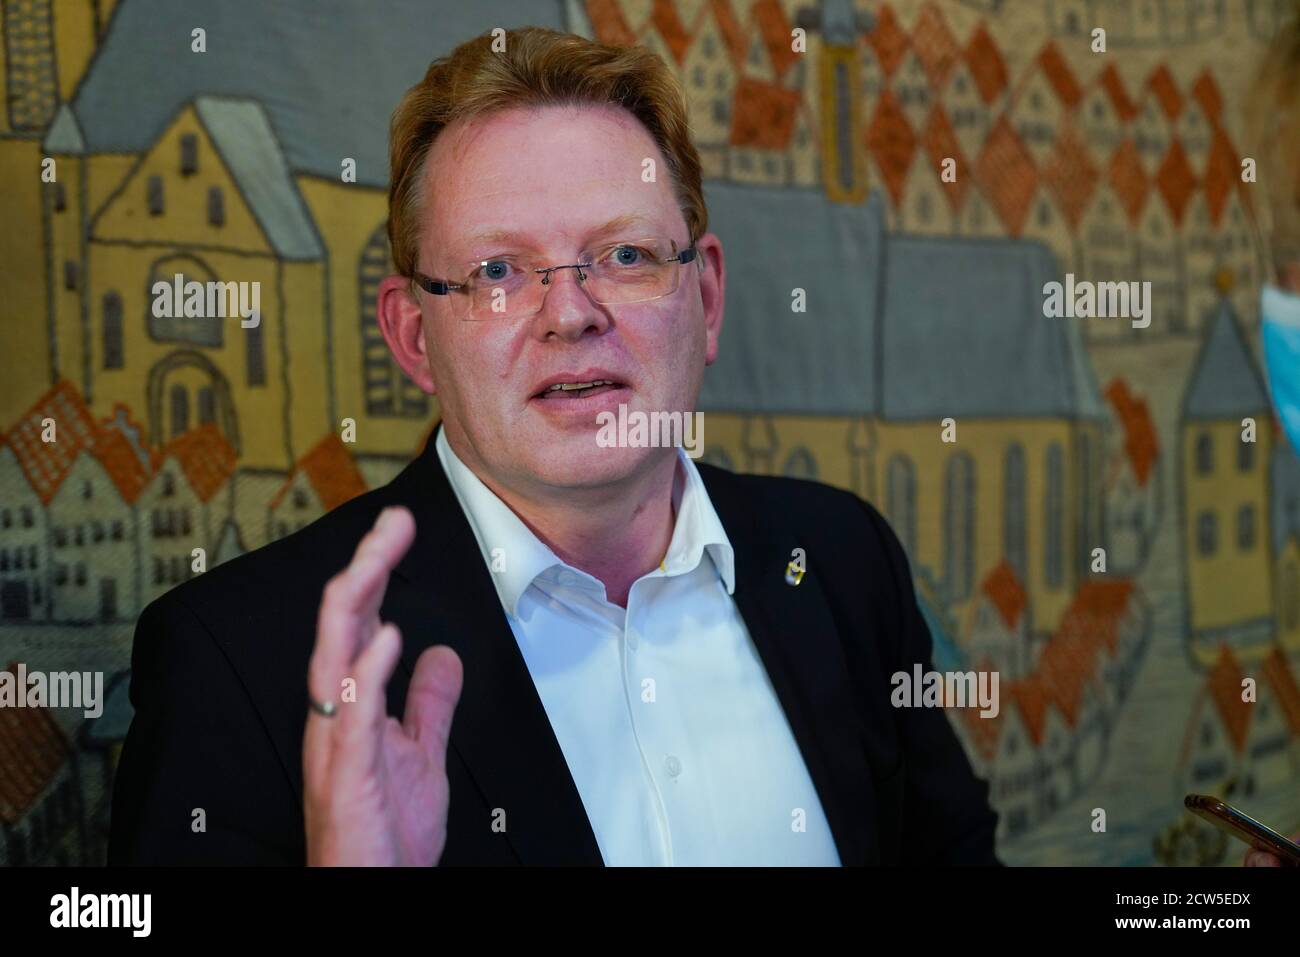 Dortmund, 27.9.2020: Andreas Hollstein (CDU), ist bei der Oberbürgermeister-Stichwahl im Rahmen der Kommunalwahl 2020 gegen den SPD-Kandidaten Thomas Westphal (nicht im Bild) unterlegen. Stock Photo